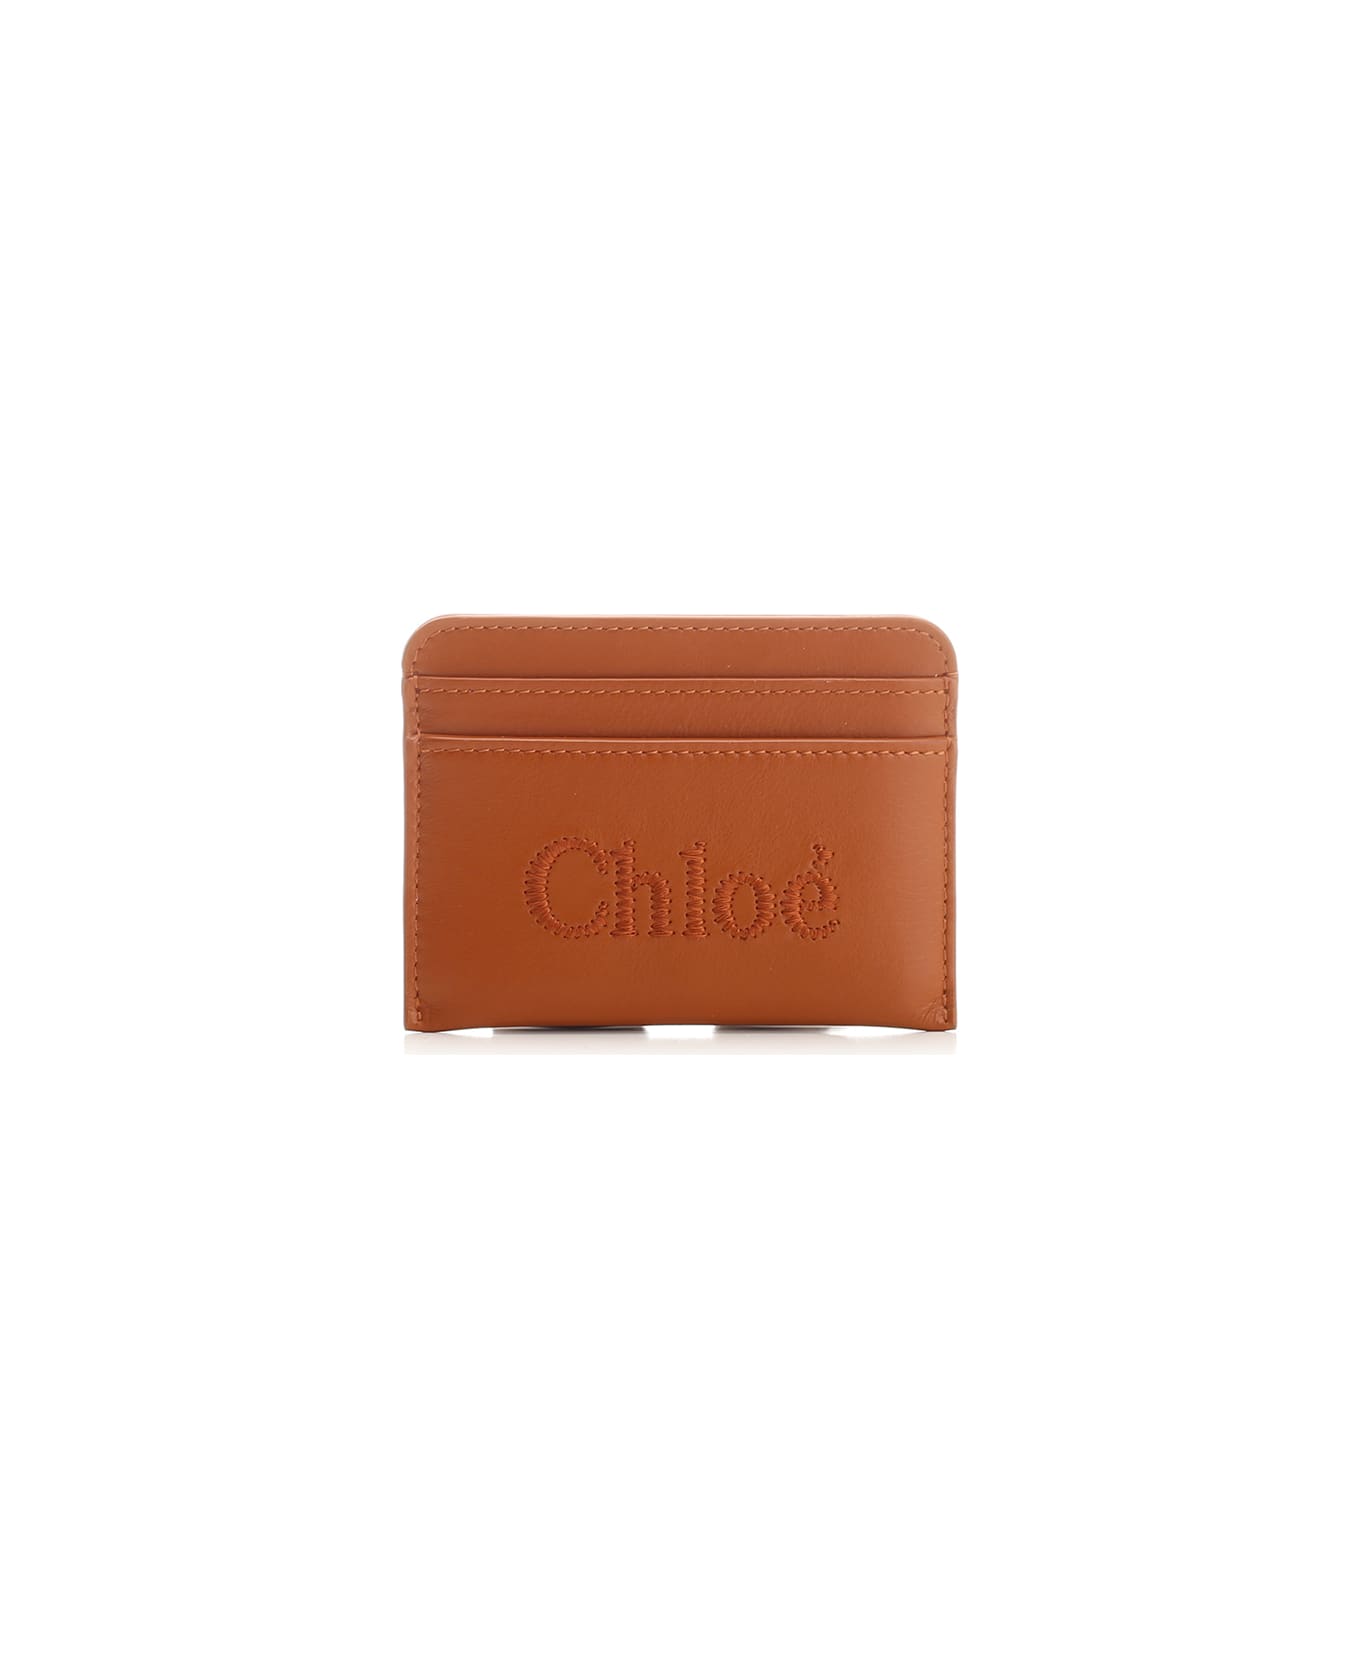 Chloé Card Slots - Brown 財布